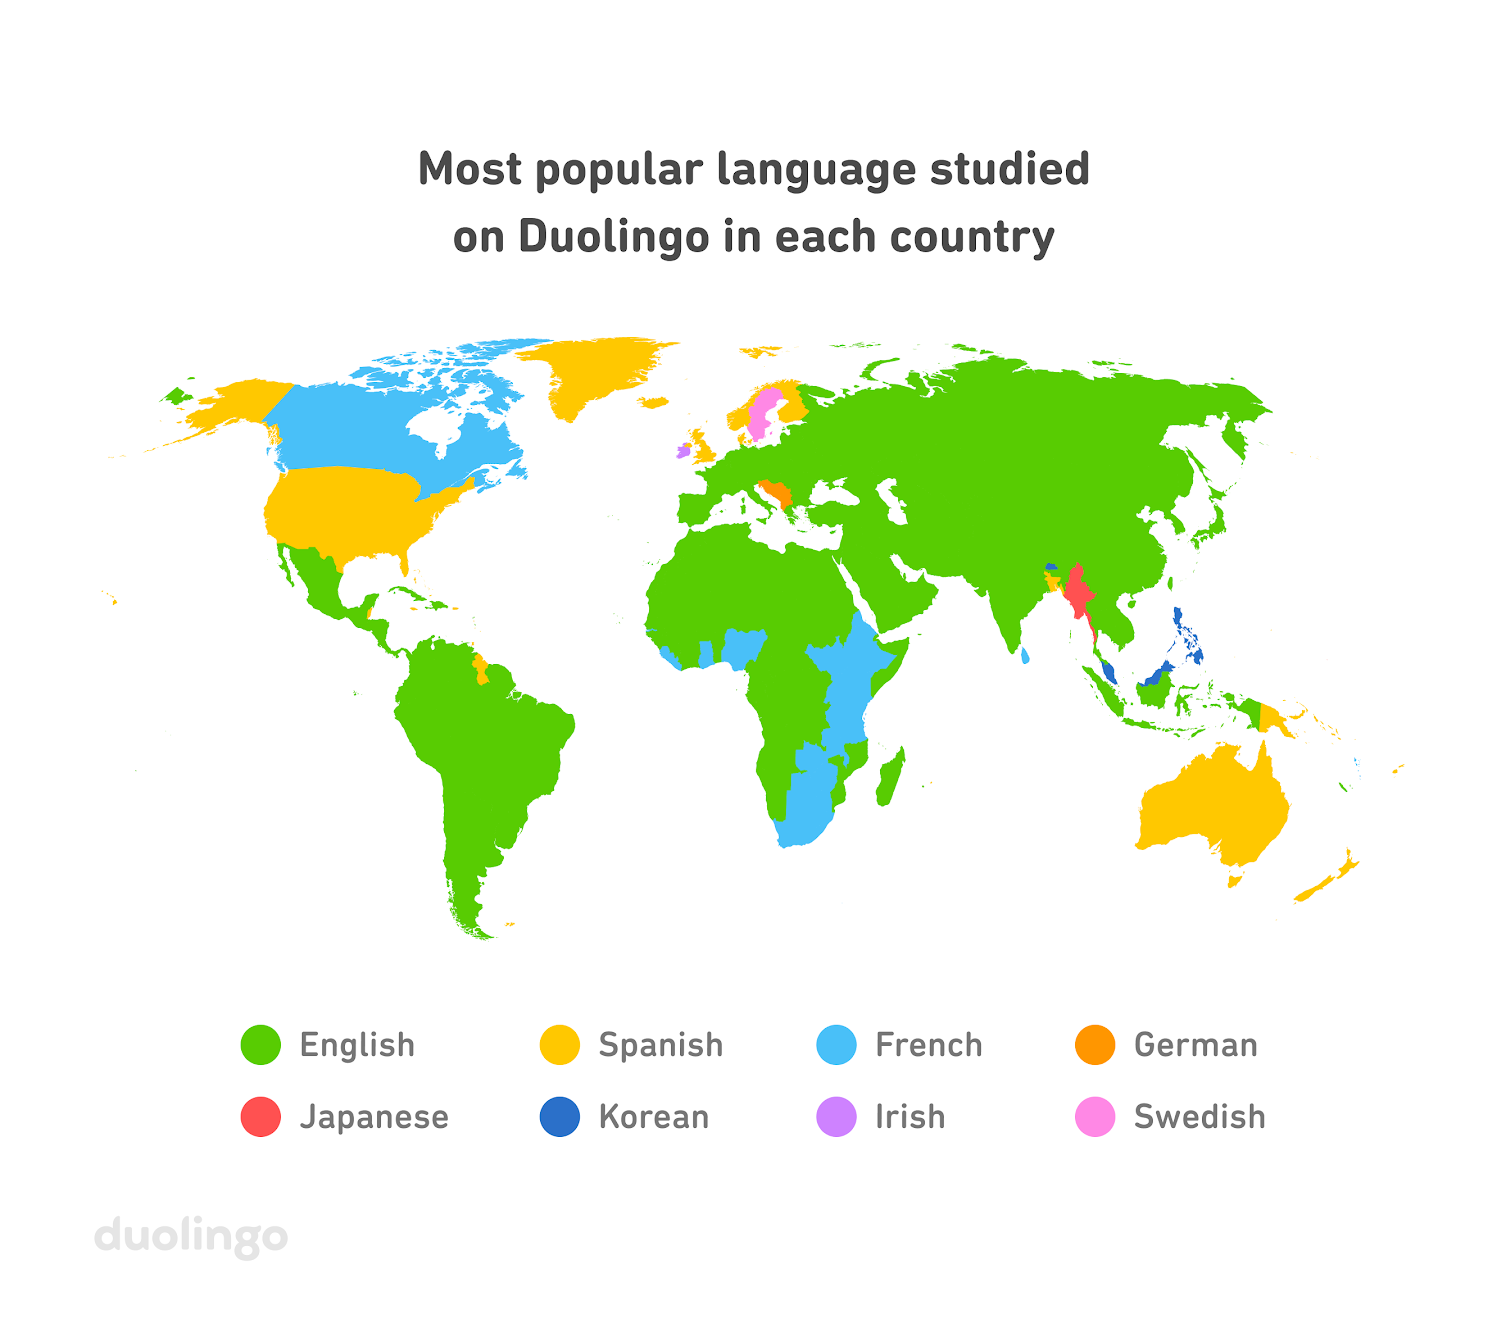 duolingo languages